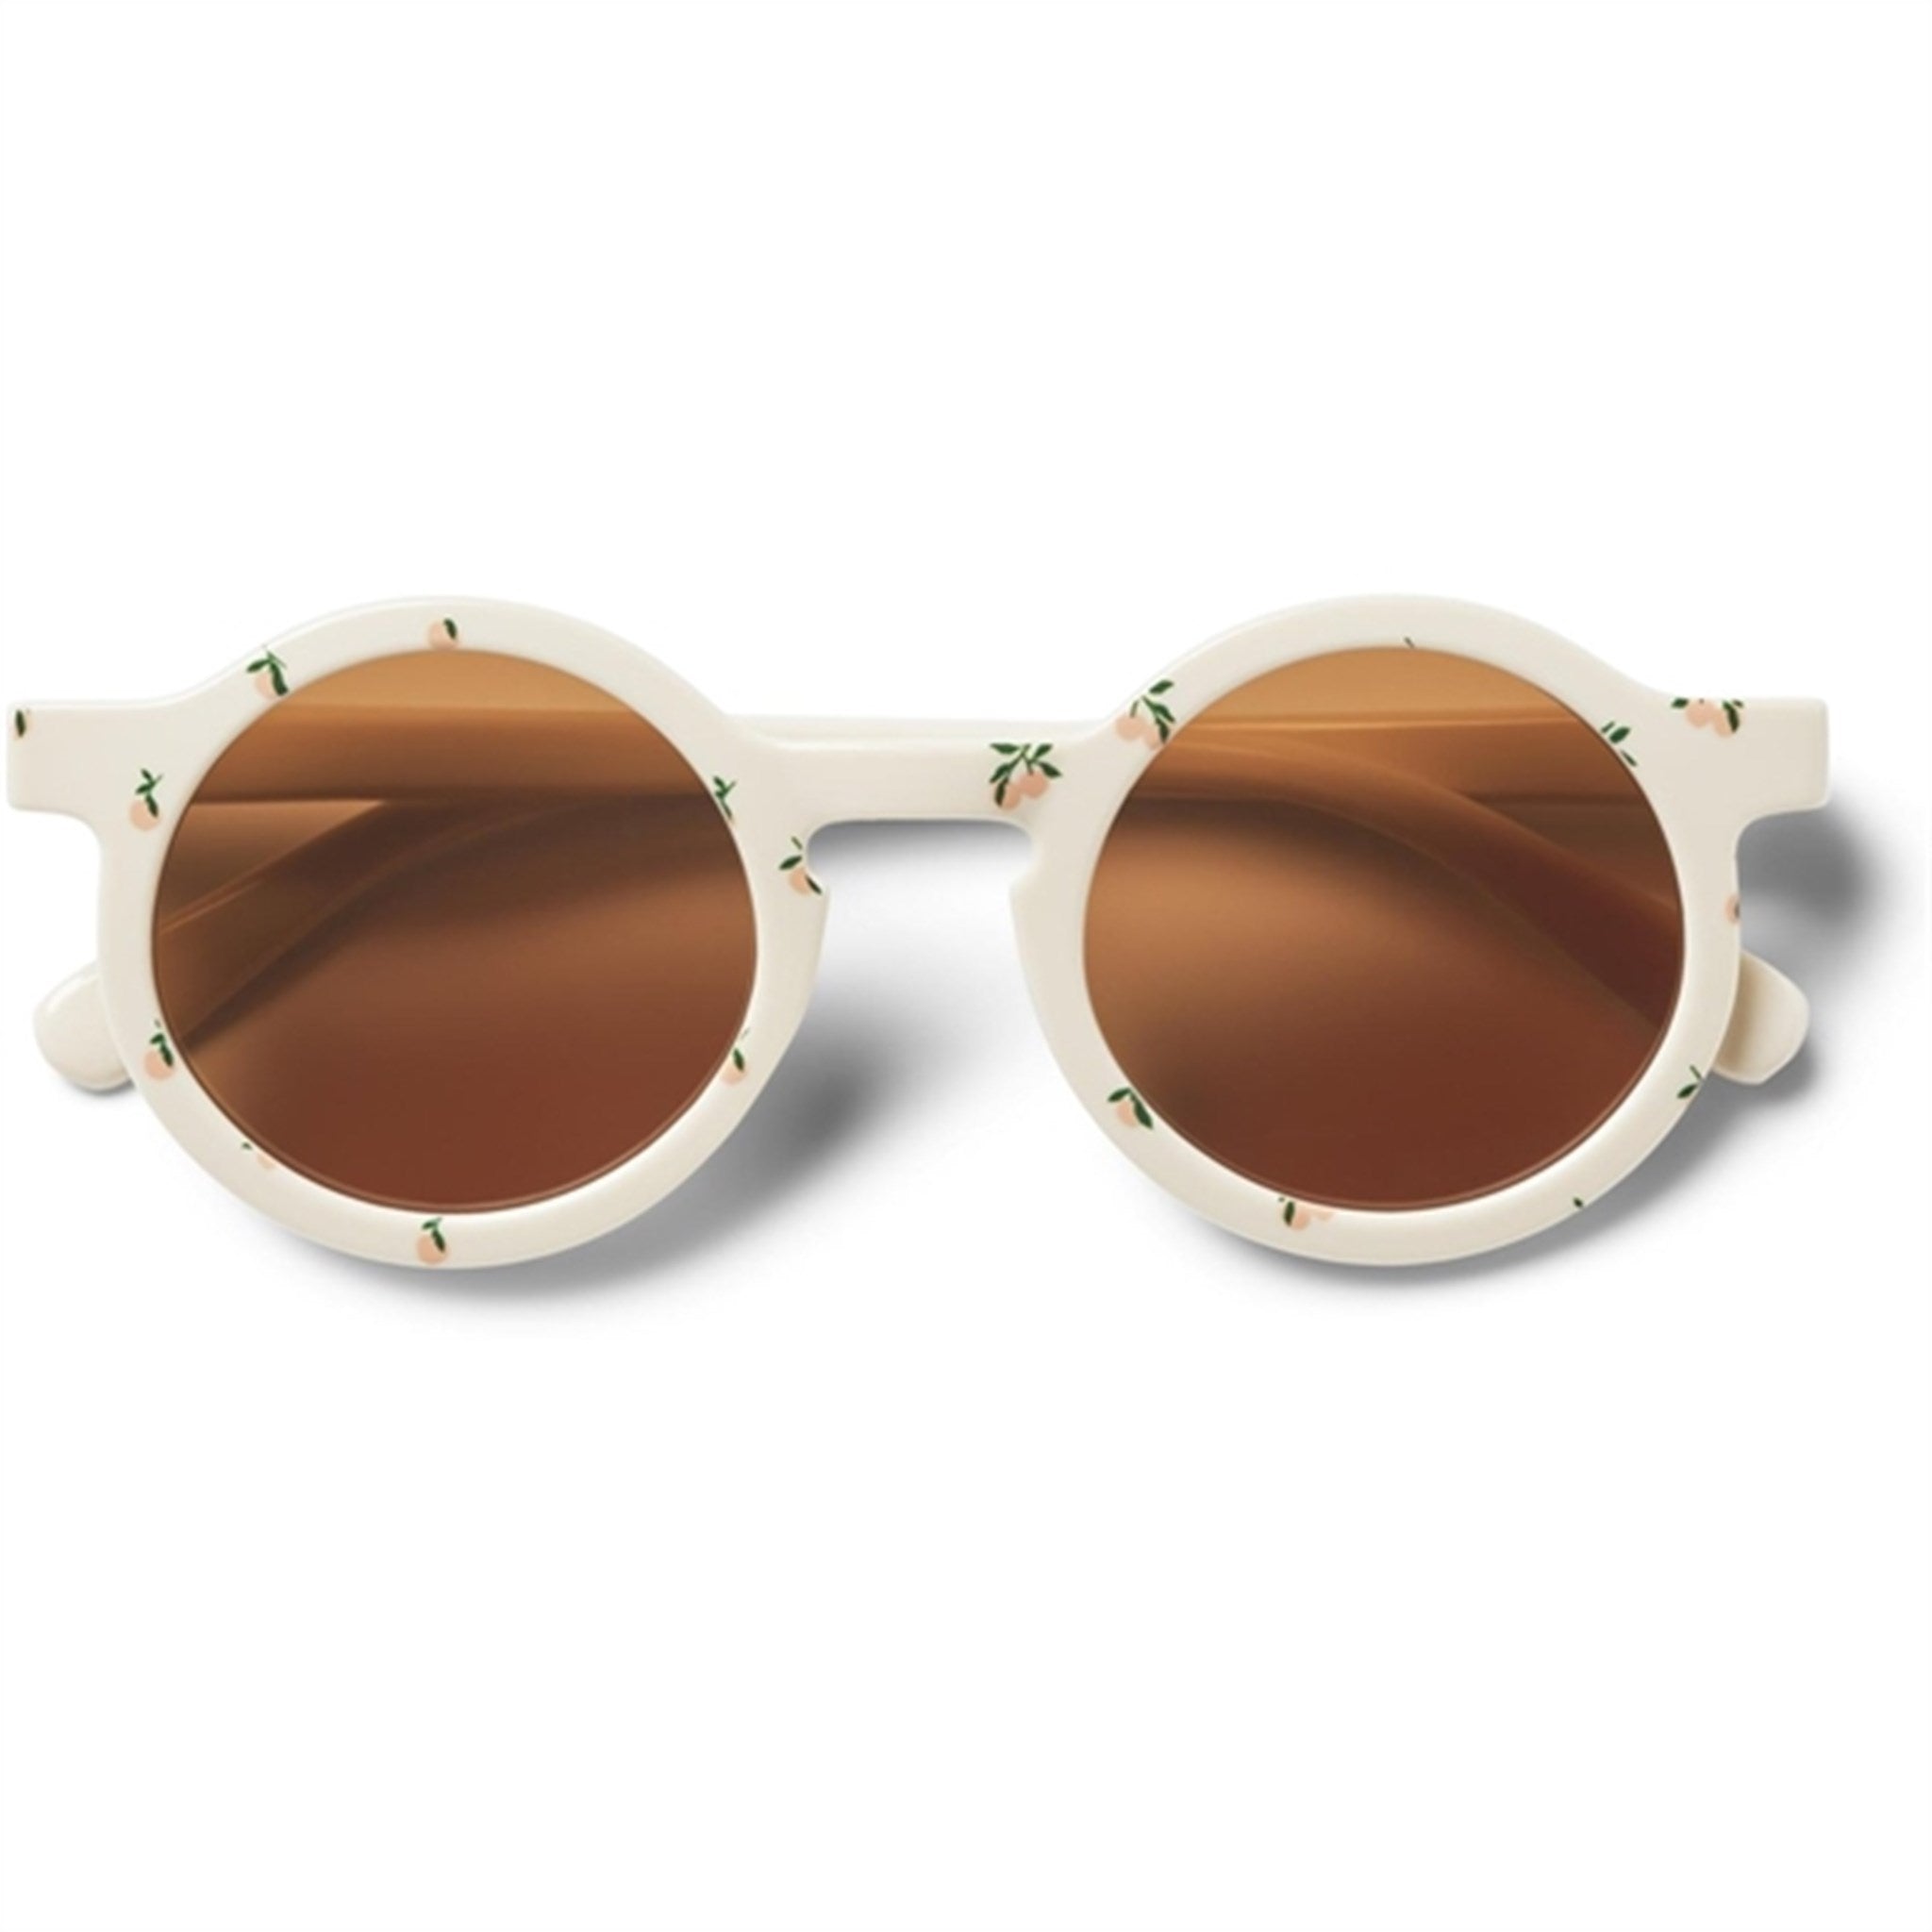 Liewood Darla Sunglasses 4 - 10 Y/O Peach Sea Shell 2